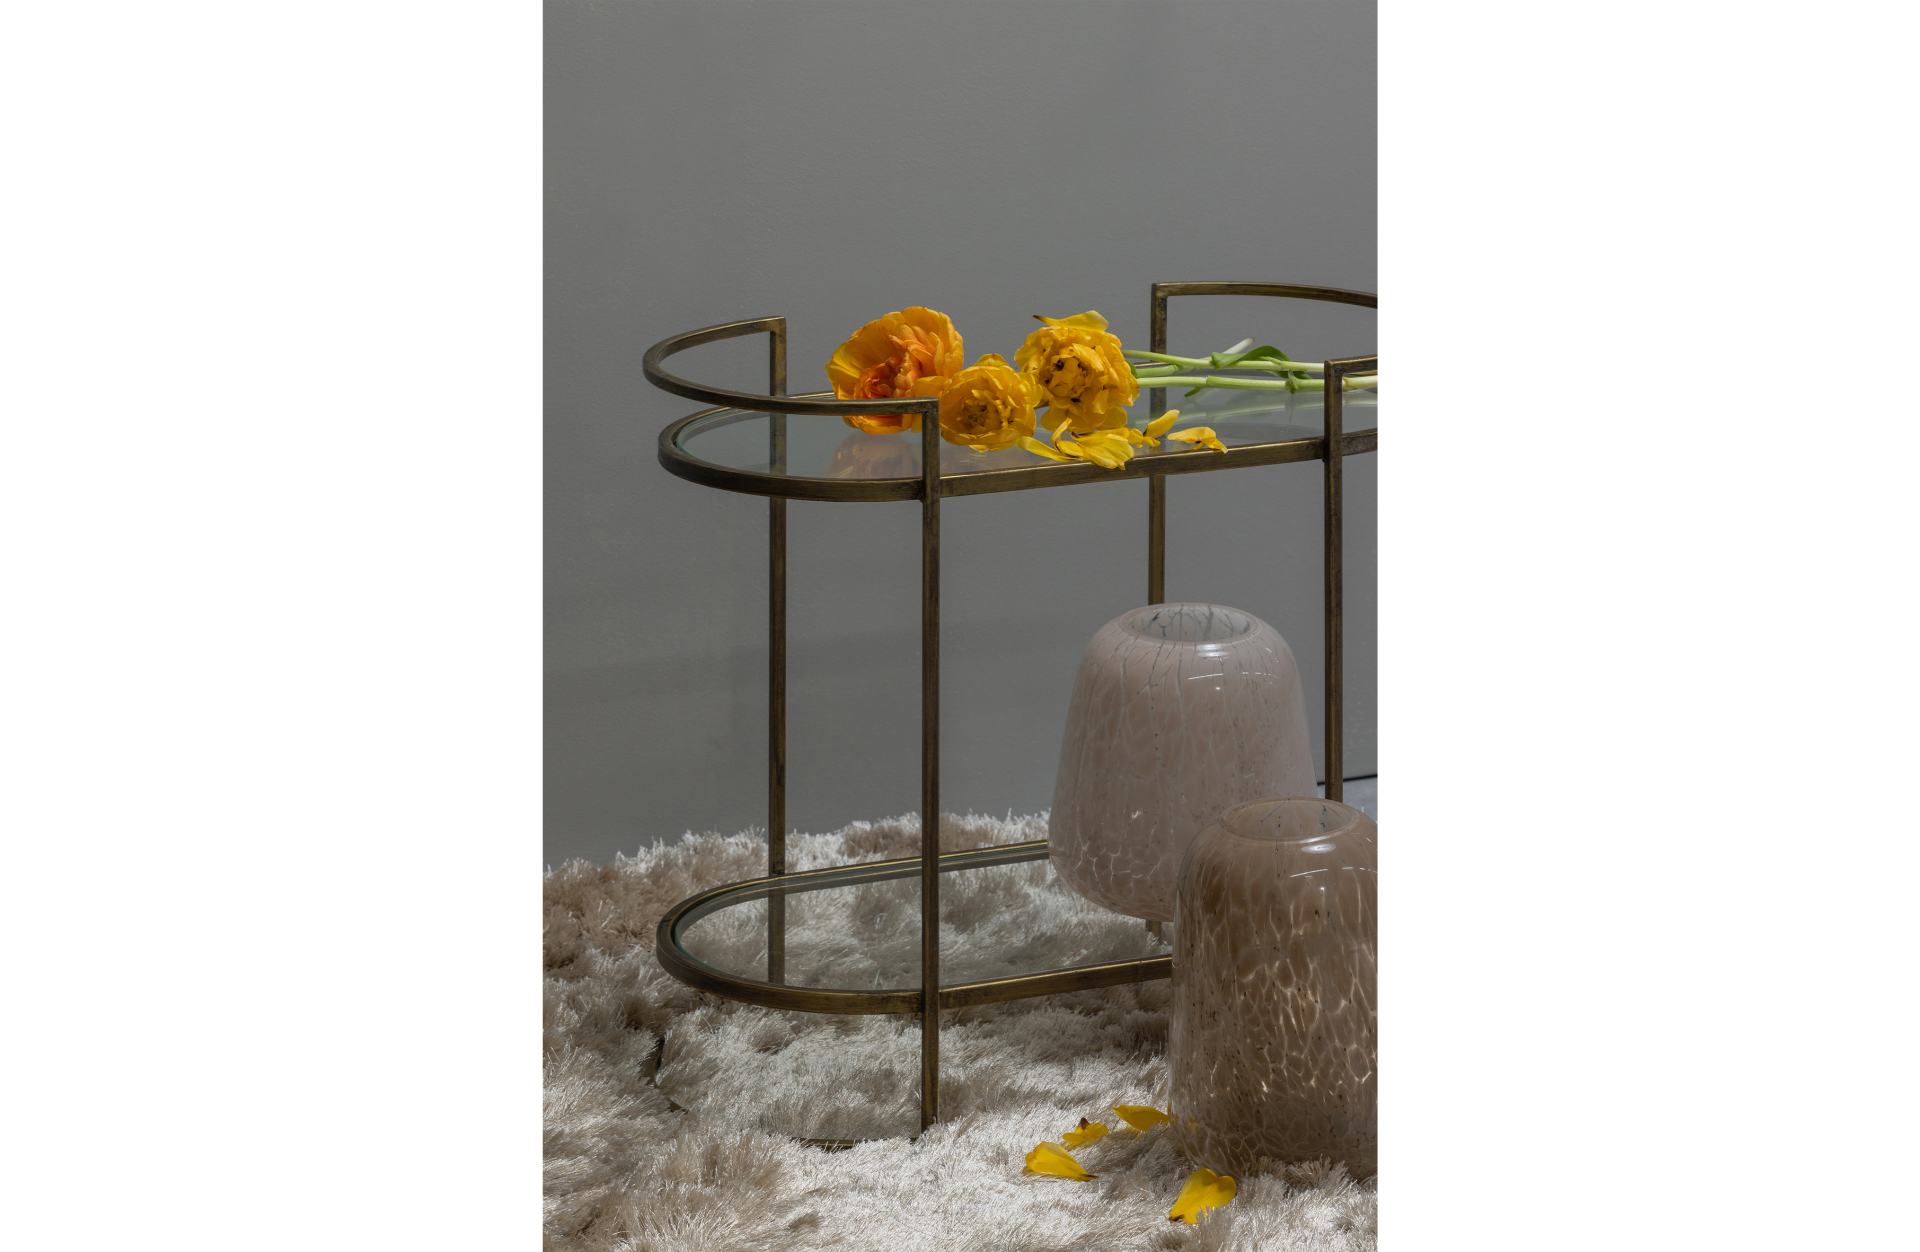 Der Beistelltisch Capital überzeugt mit seinem Klassischem Design. Gefertigt wurde der Tisch aus Metall, welches einen Messing Farbton besitzt. Der Tisch verfügt über zwei Fächer, welche einen Boden aus Glas besitzen.